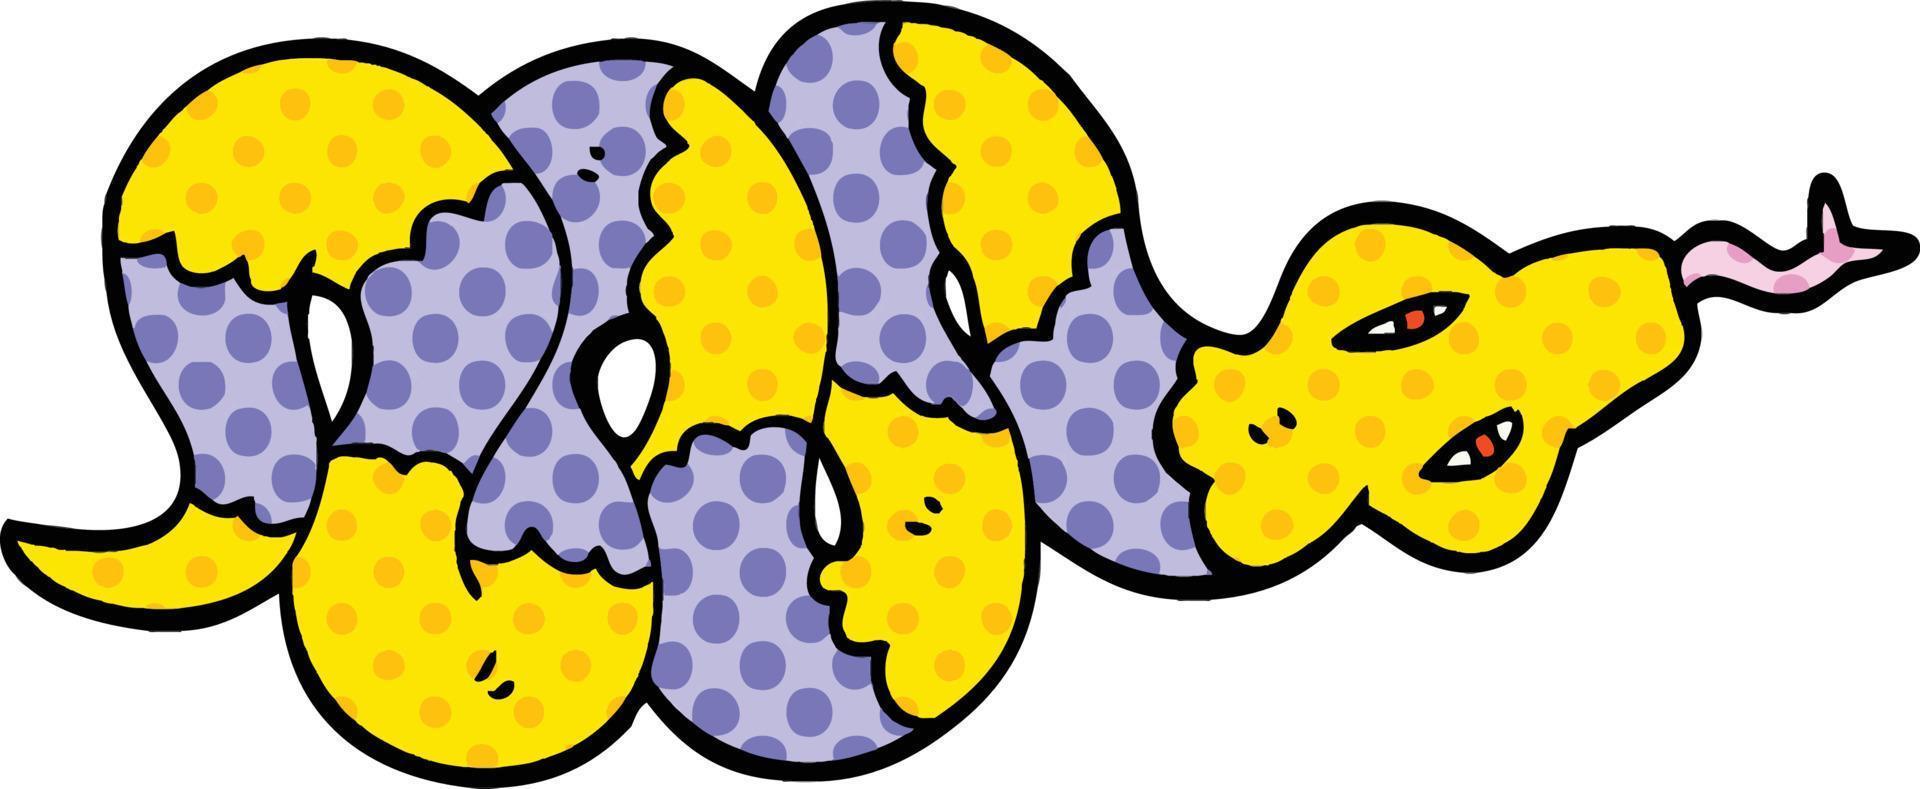 serpent venimeux de dessin animé de style bande dessinée vecteur